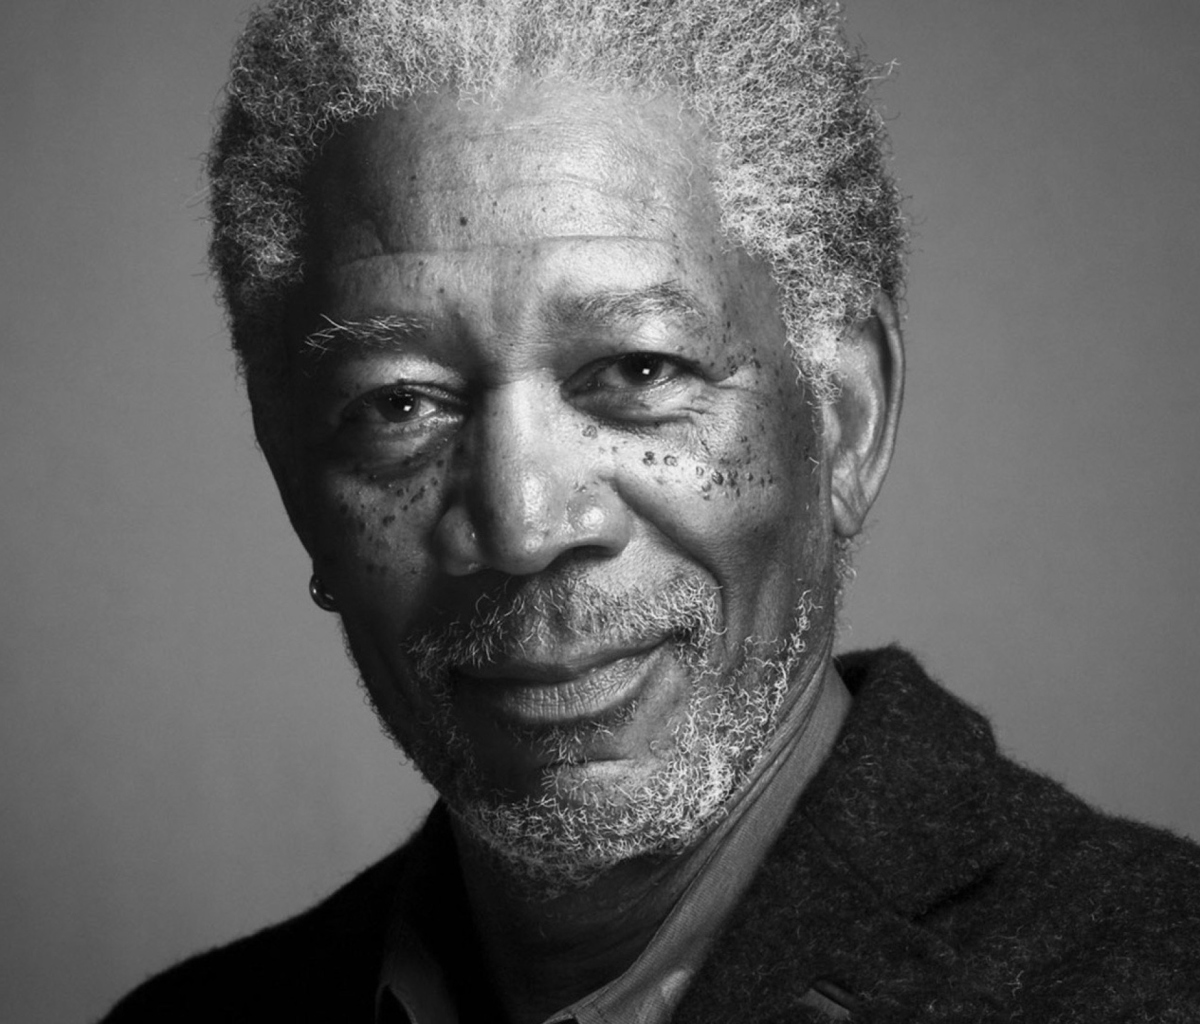 Das Morgan Freeman Portrait In Black And White Wallpaper 1200x1024